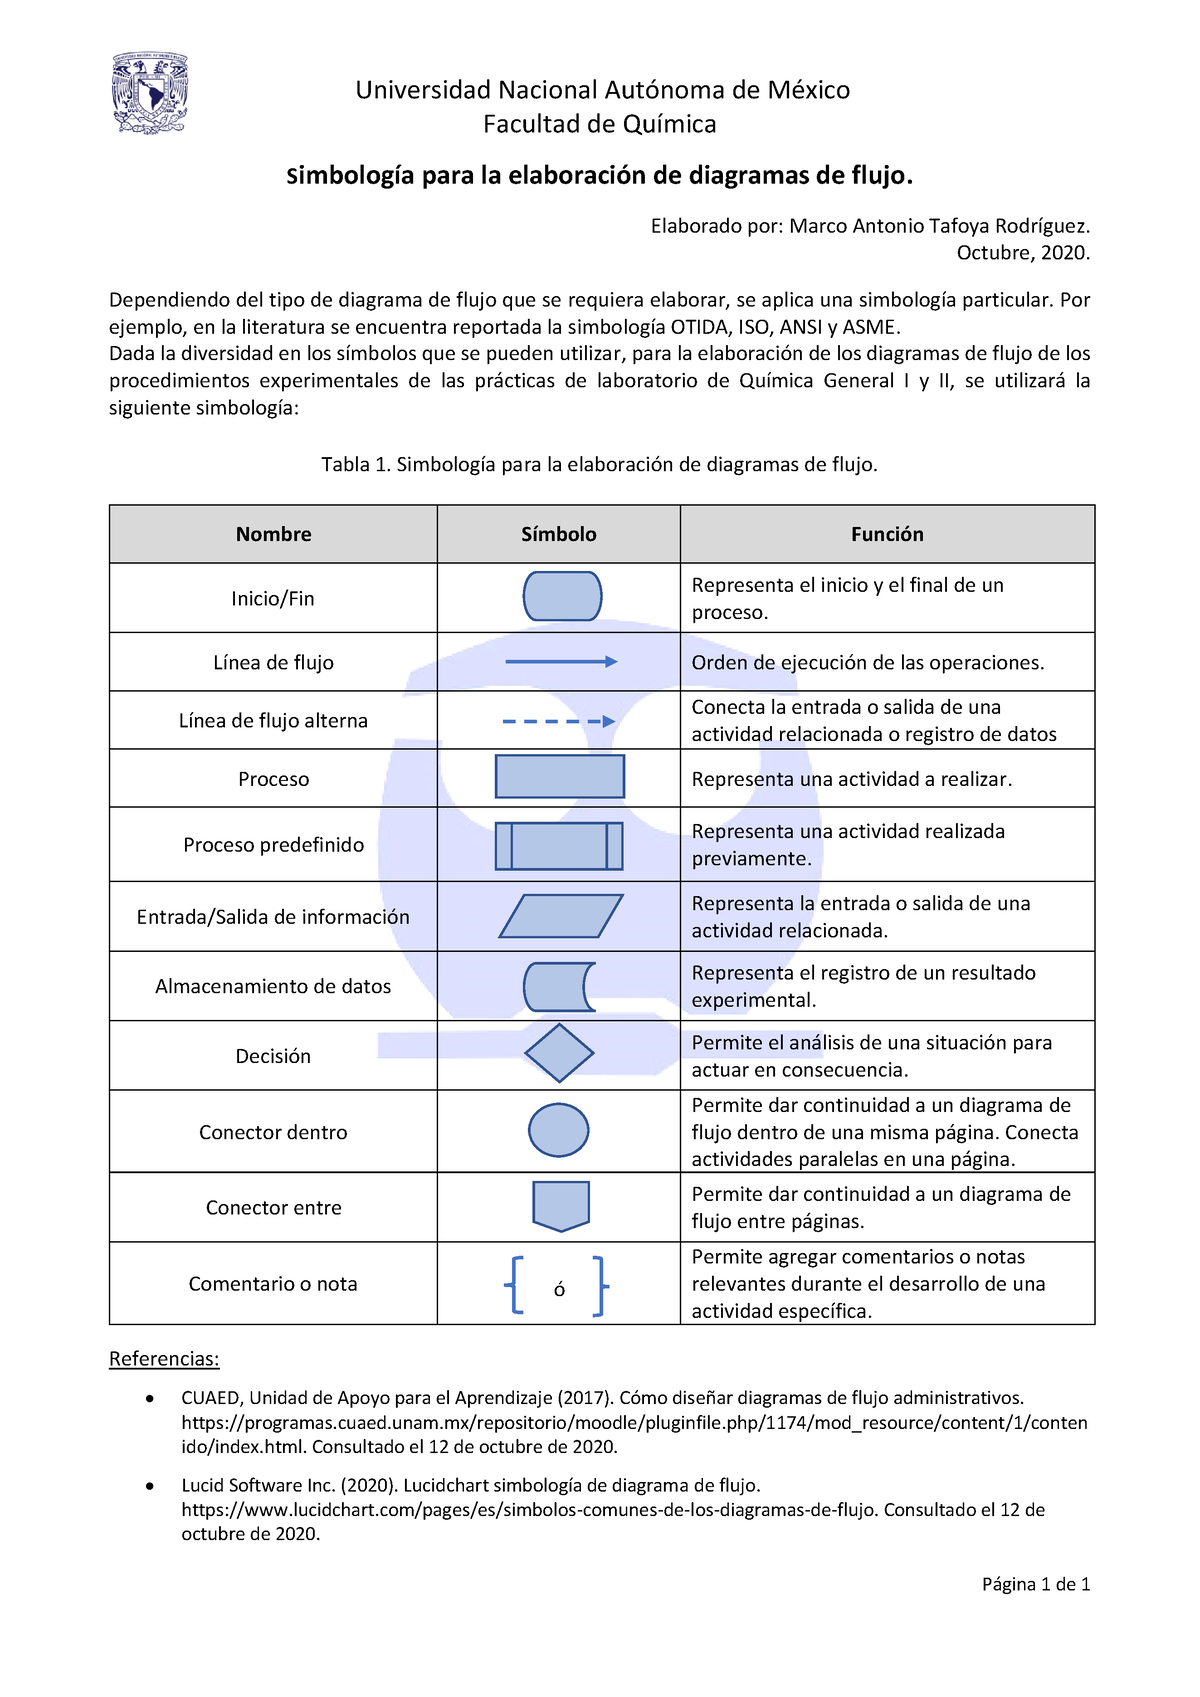 Simbología para la elaboración de diagramas de flujo - Universidad Nacional  Autónoma de México - Studocu